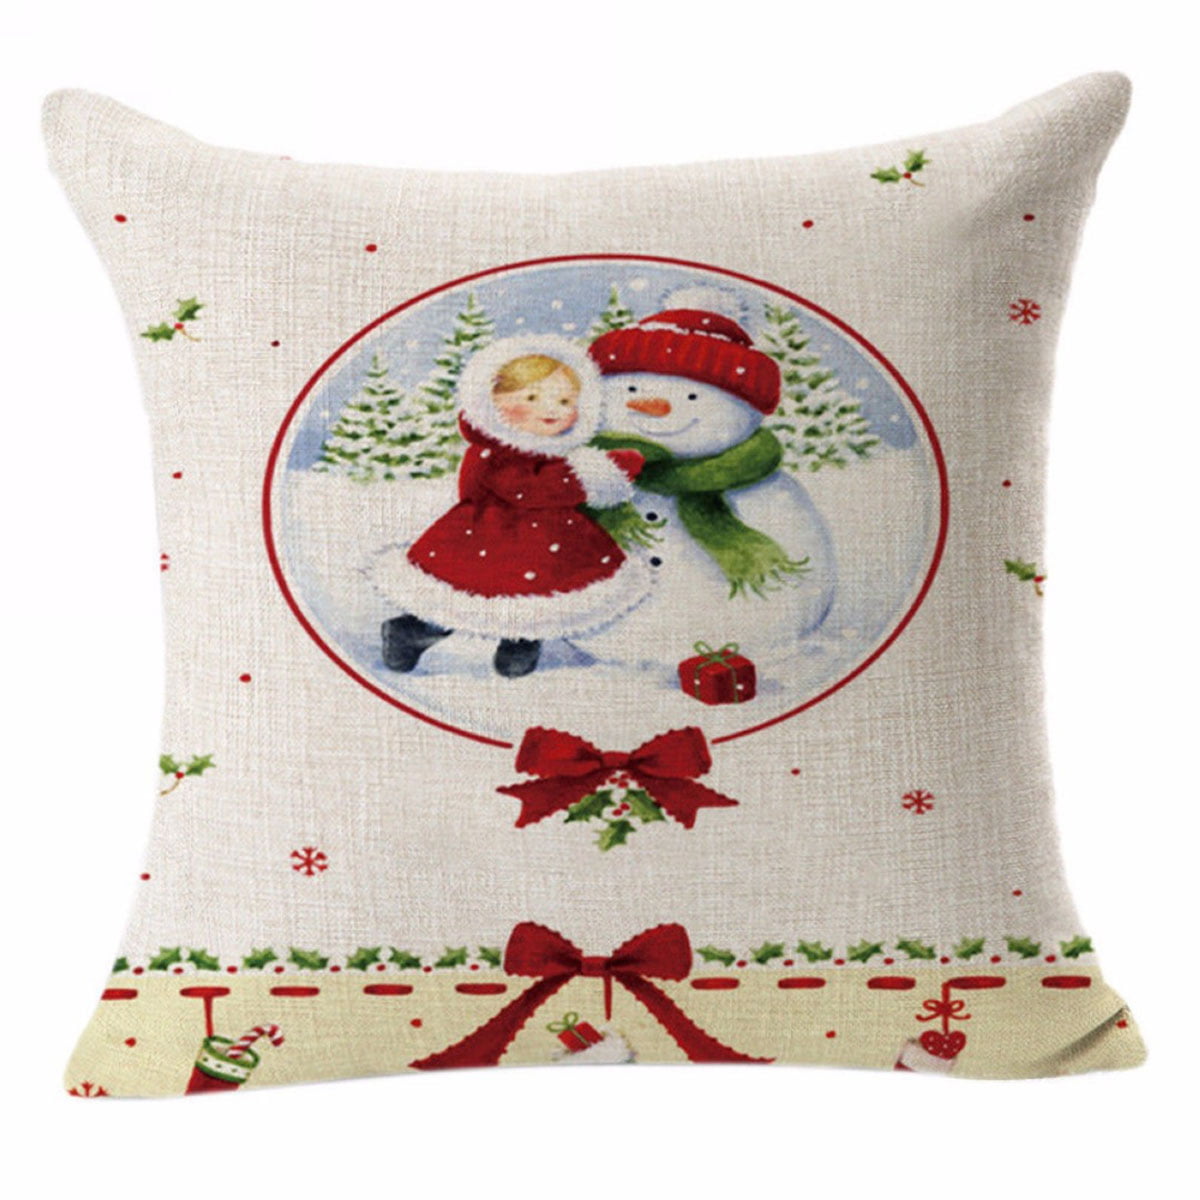 18" Cotton Linen Printing Christmas snowman pillow case Sofa Home Decor 